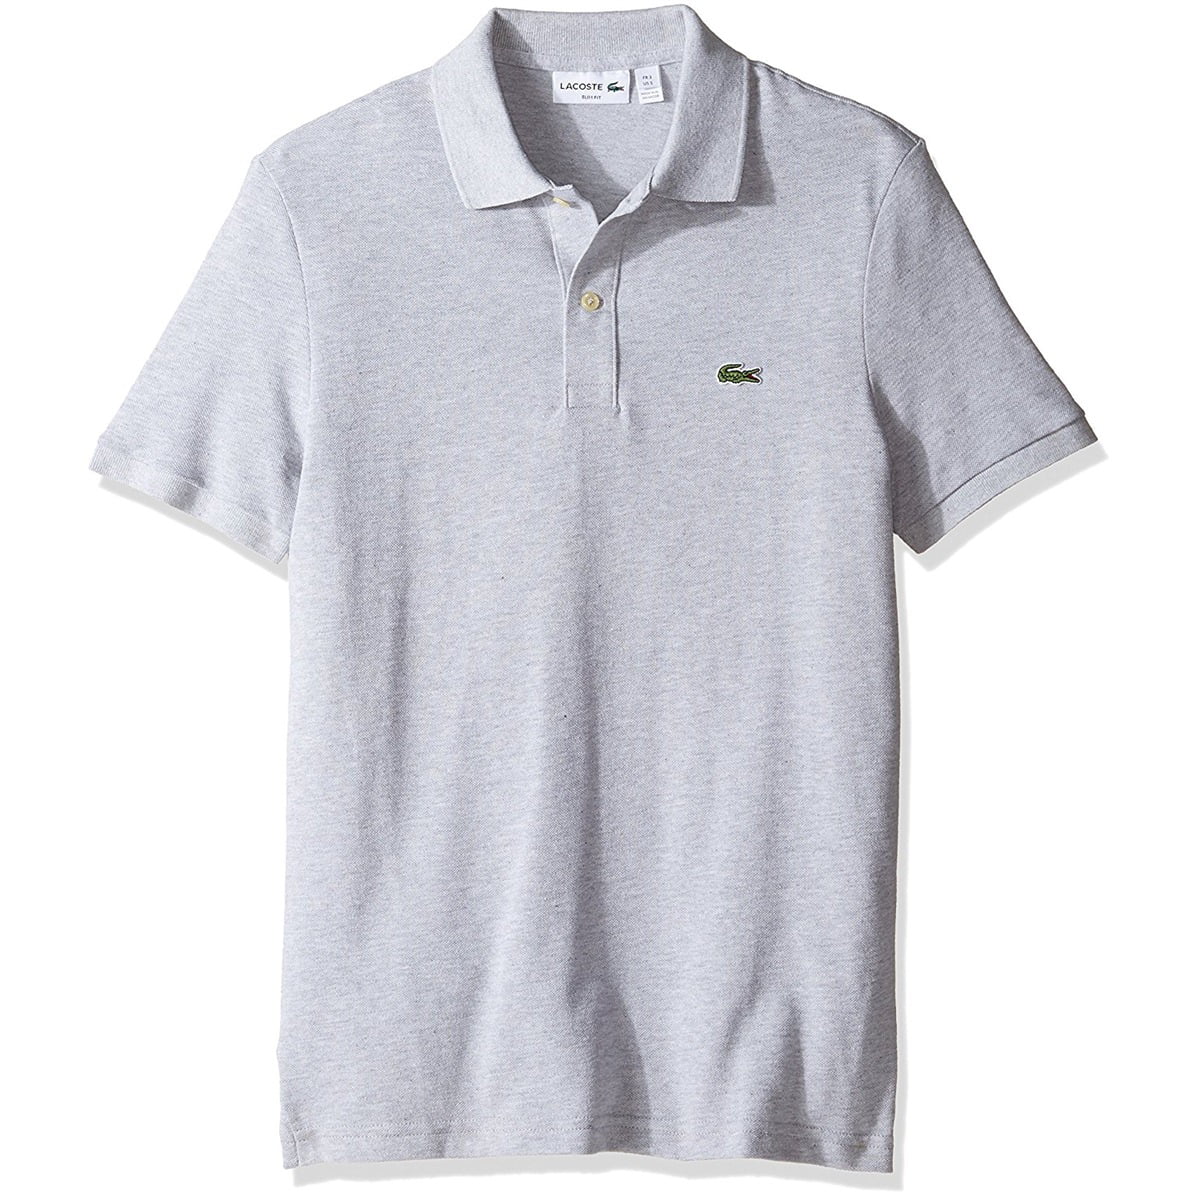 Lacoste Men's Classic Pique Cotton Slim-Fit Polo Shirt